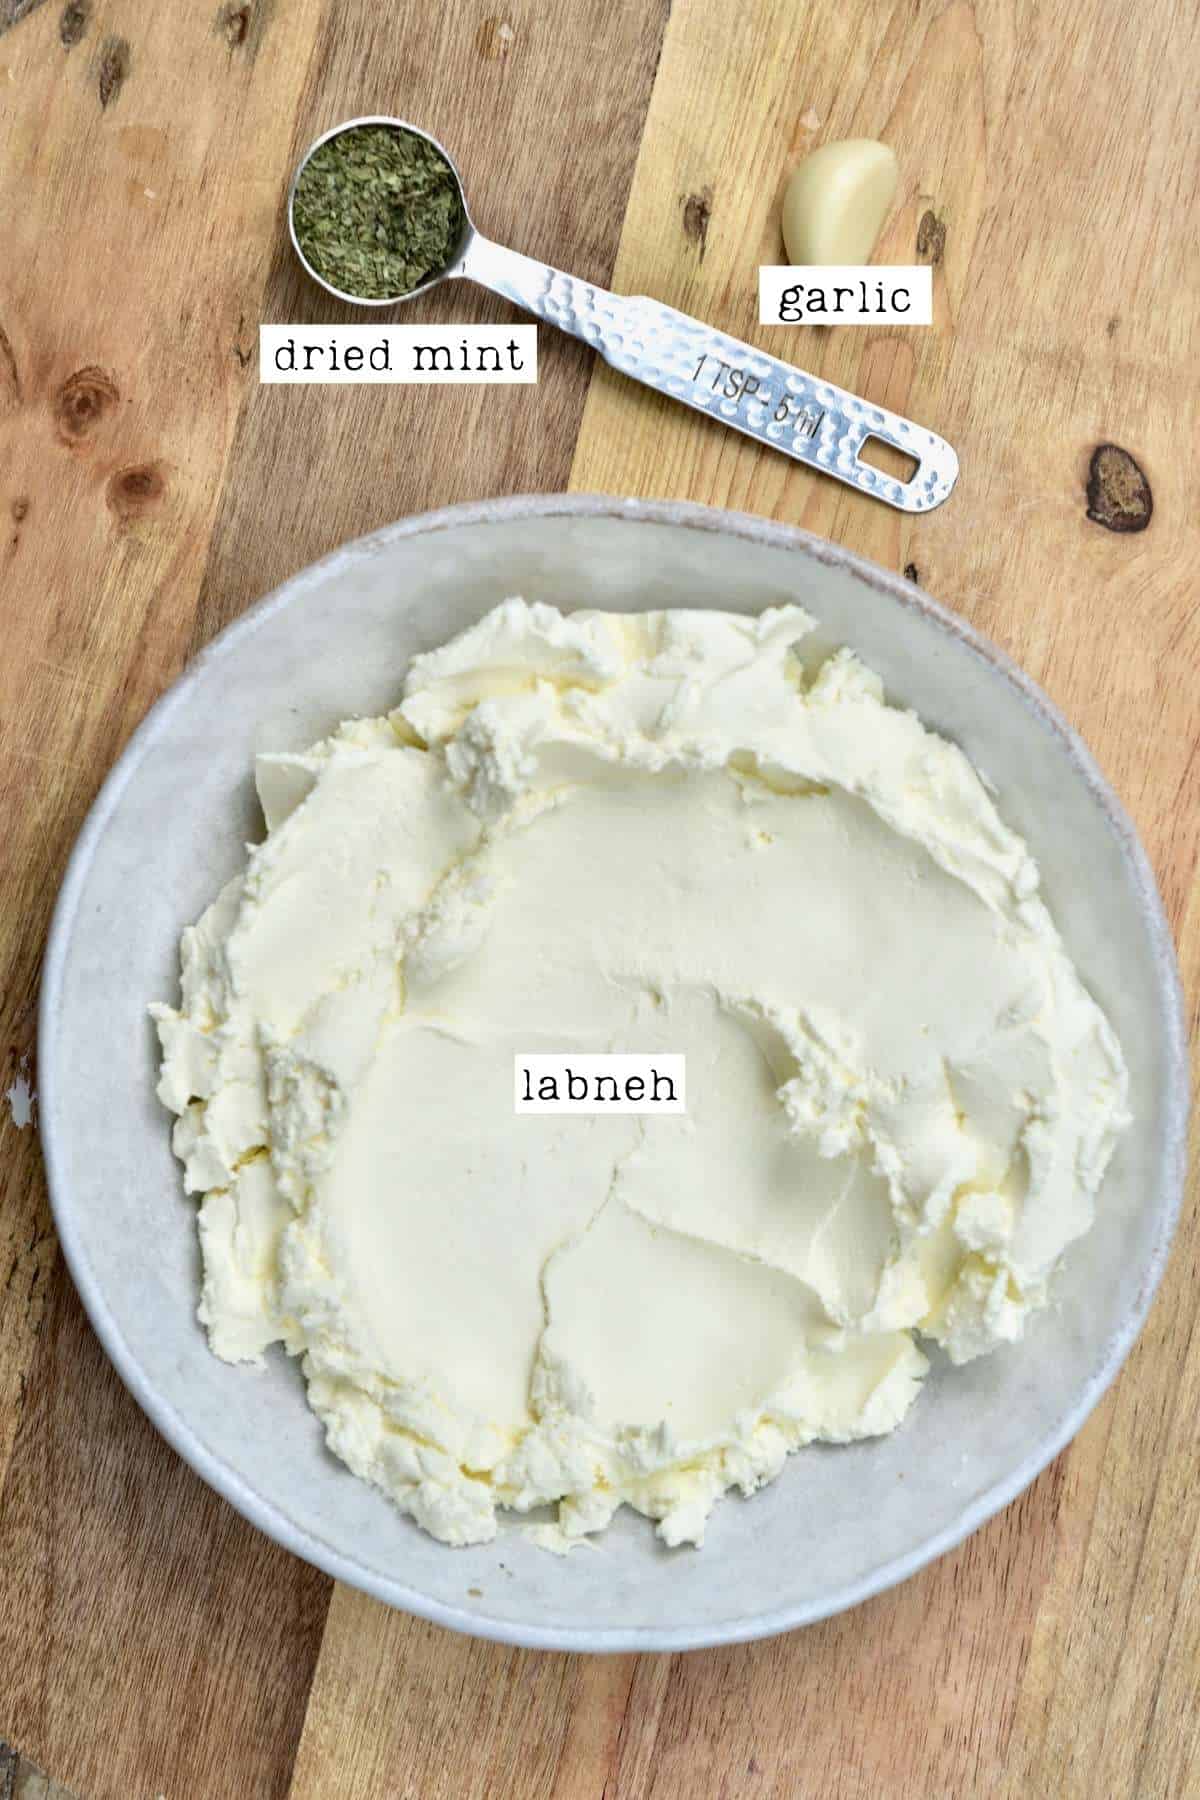 Ingredients for labneh dip